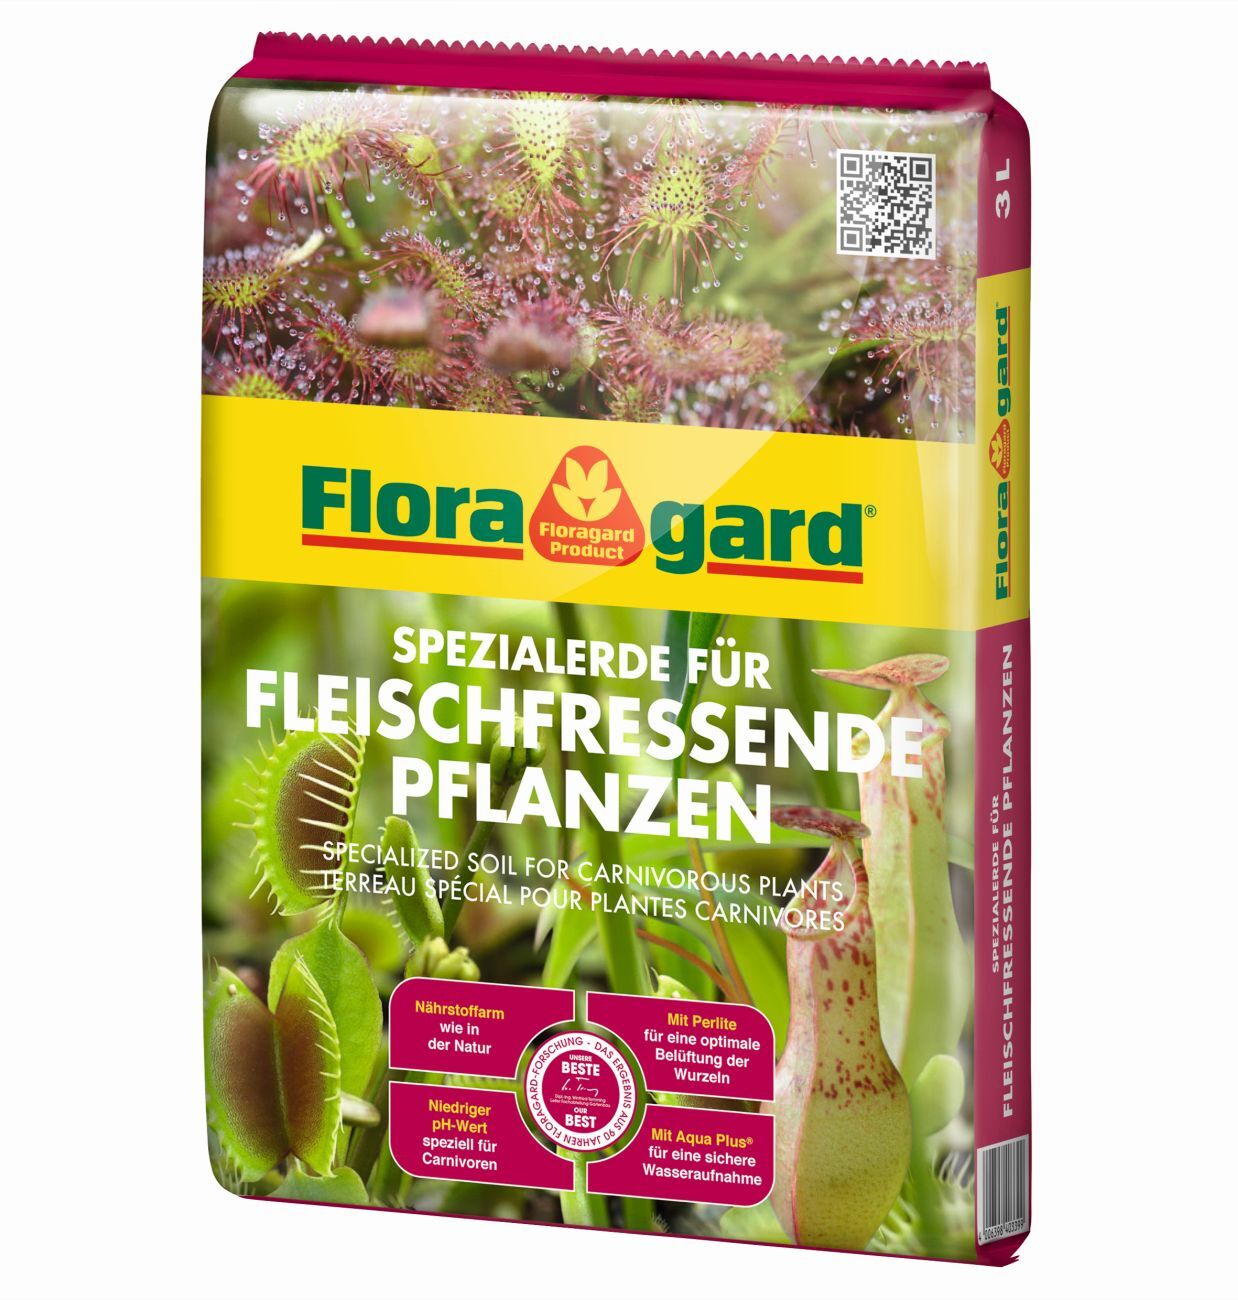 Floragard Spezialerde für Fleischfressende Pflanzen